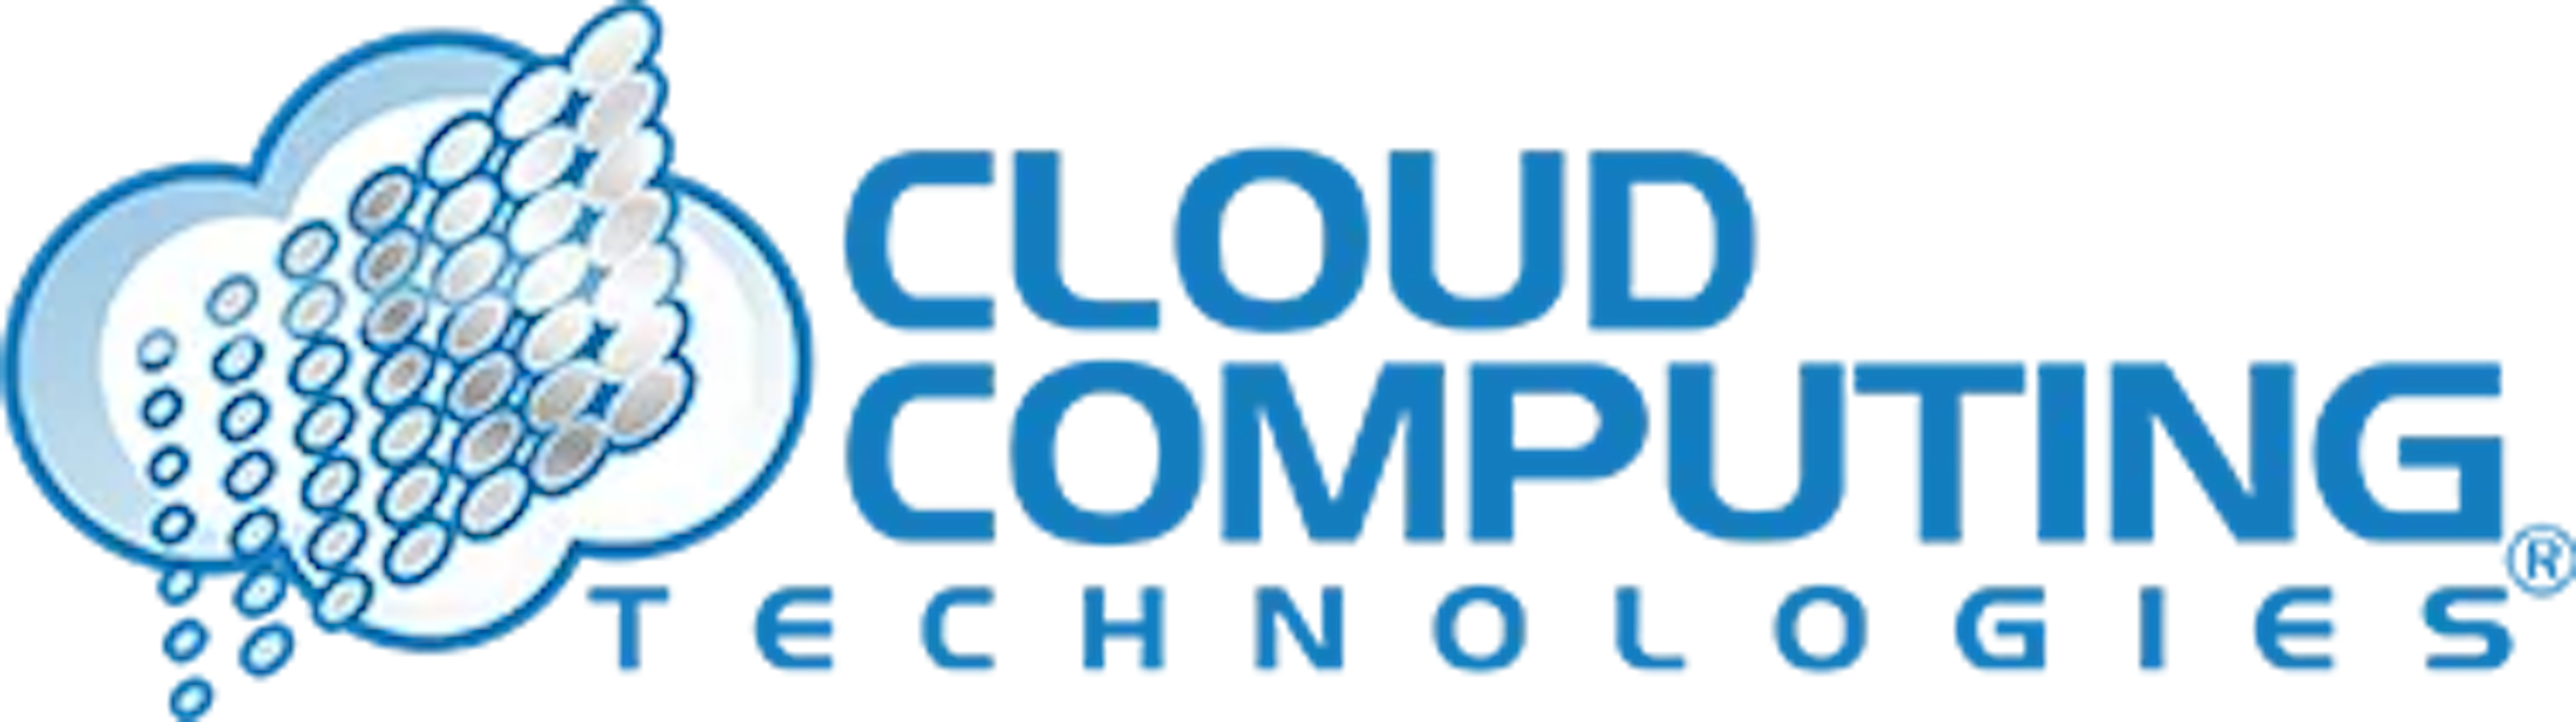 Cloudcomputingtechnologies.com